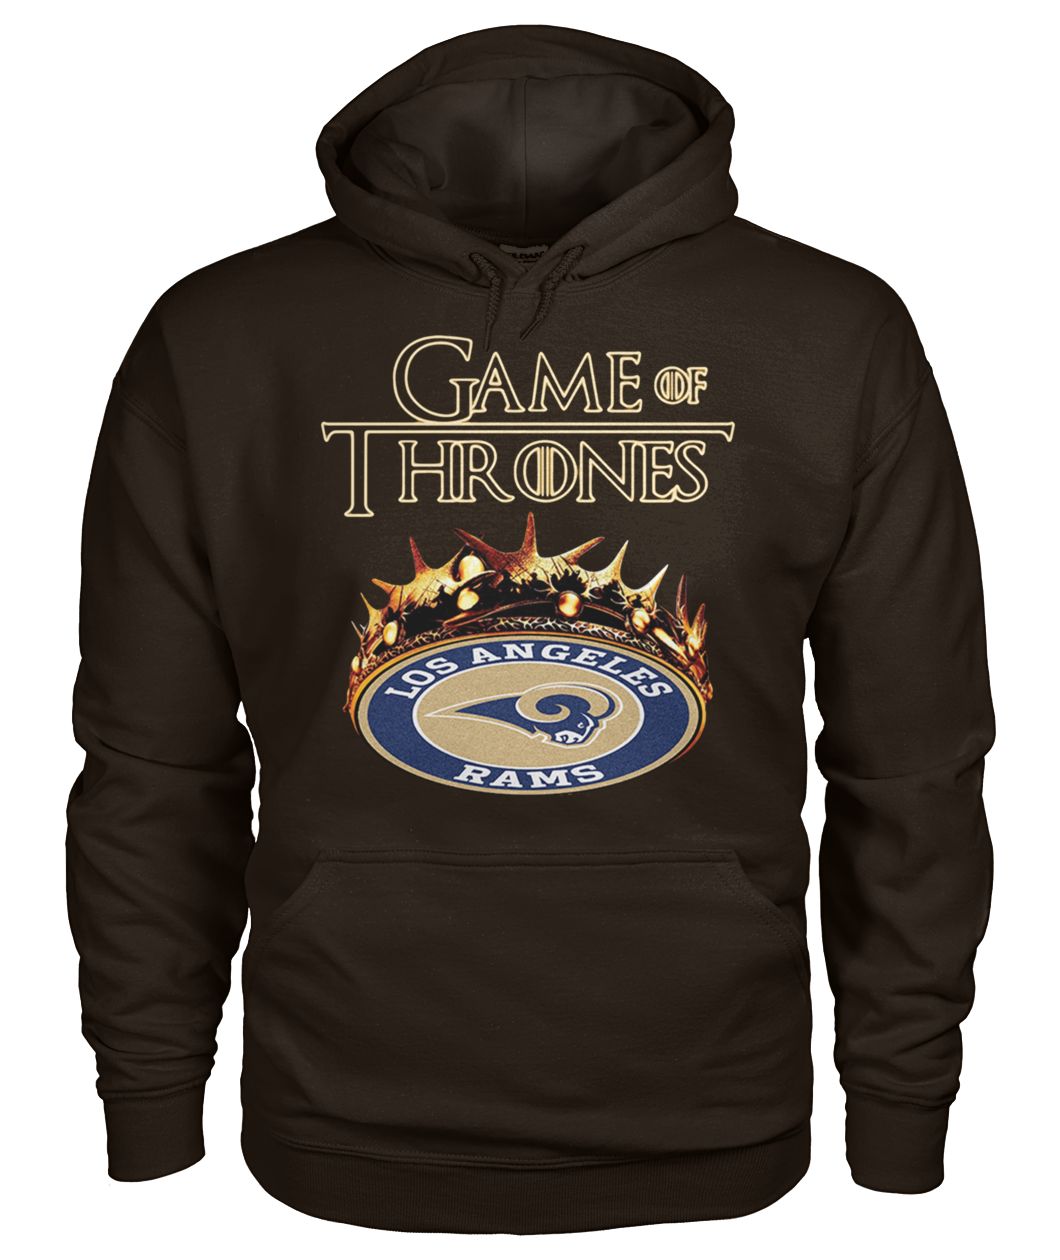 Game of thrones crown los angeles rams gildan hoodie